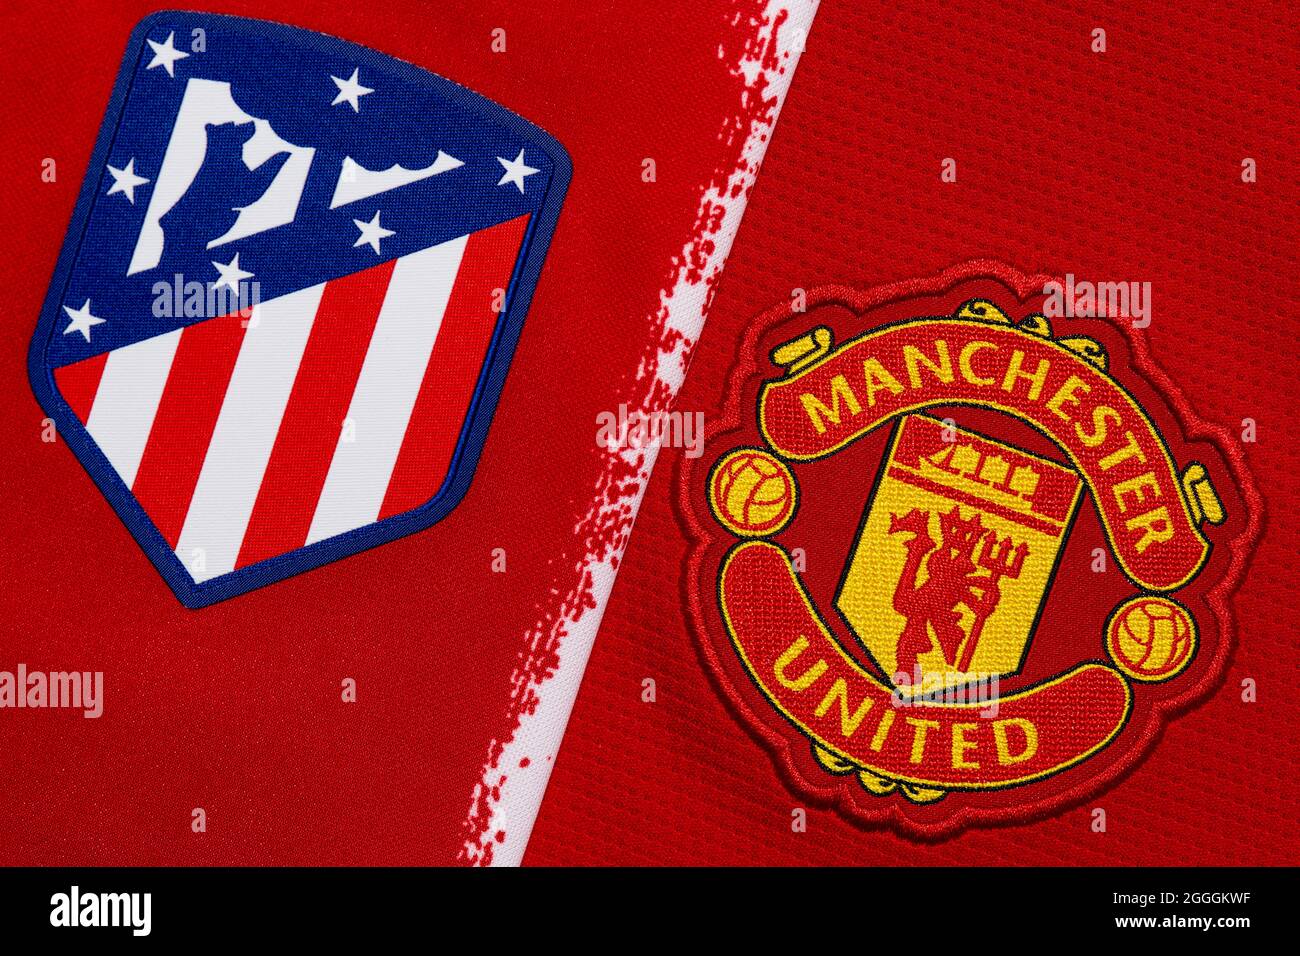 Nahaufnahme des Vereinswappens von Manchester United und Atletico Madrid. Stockfoto